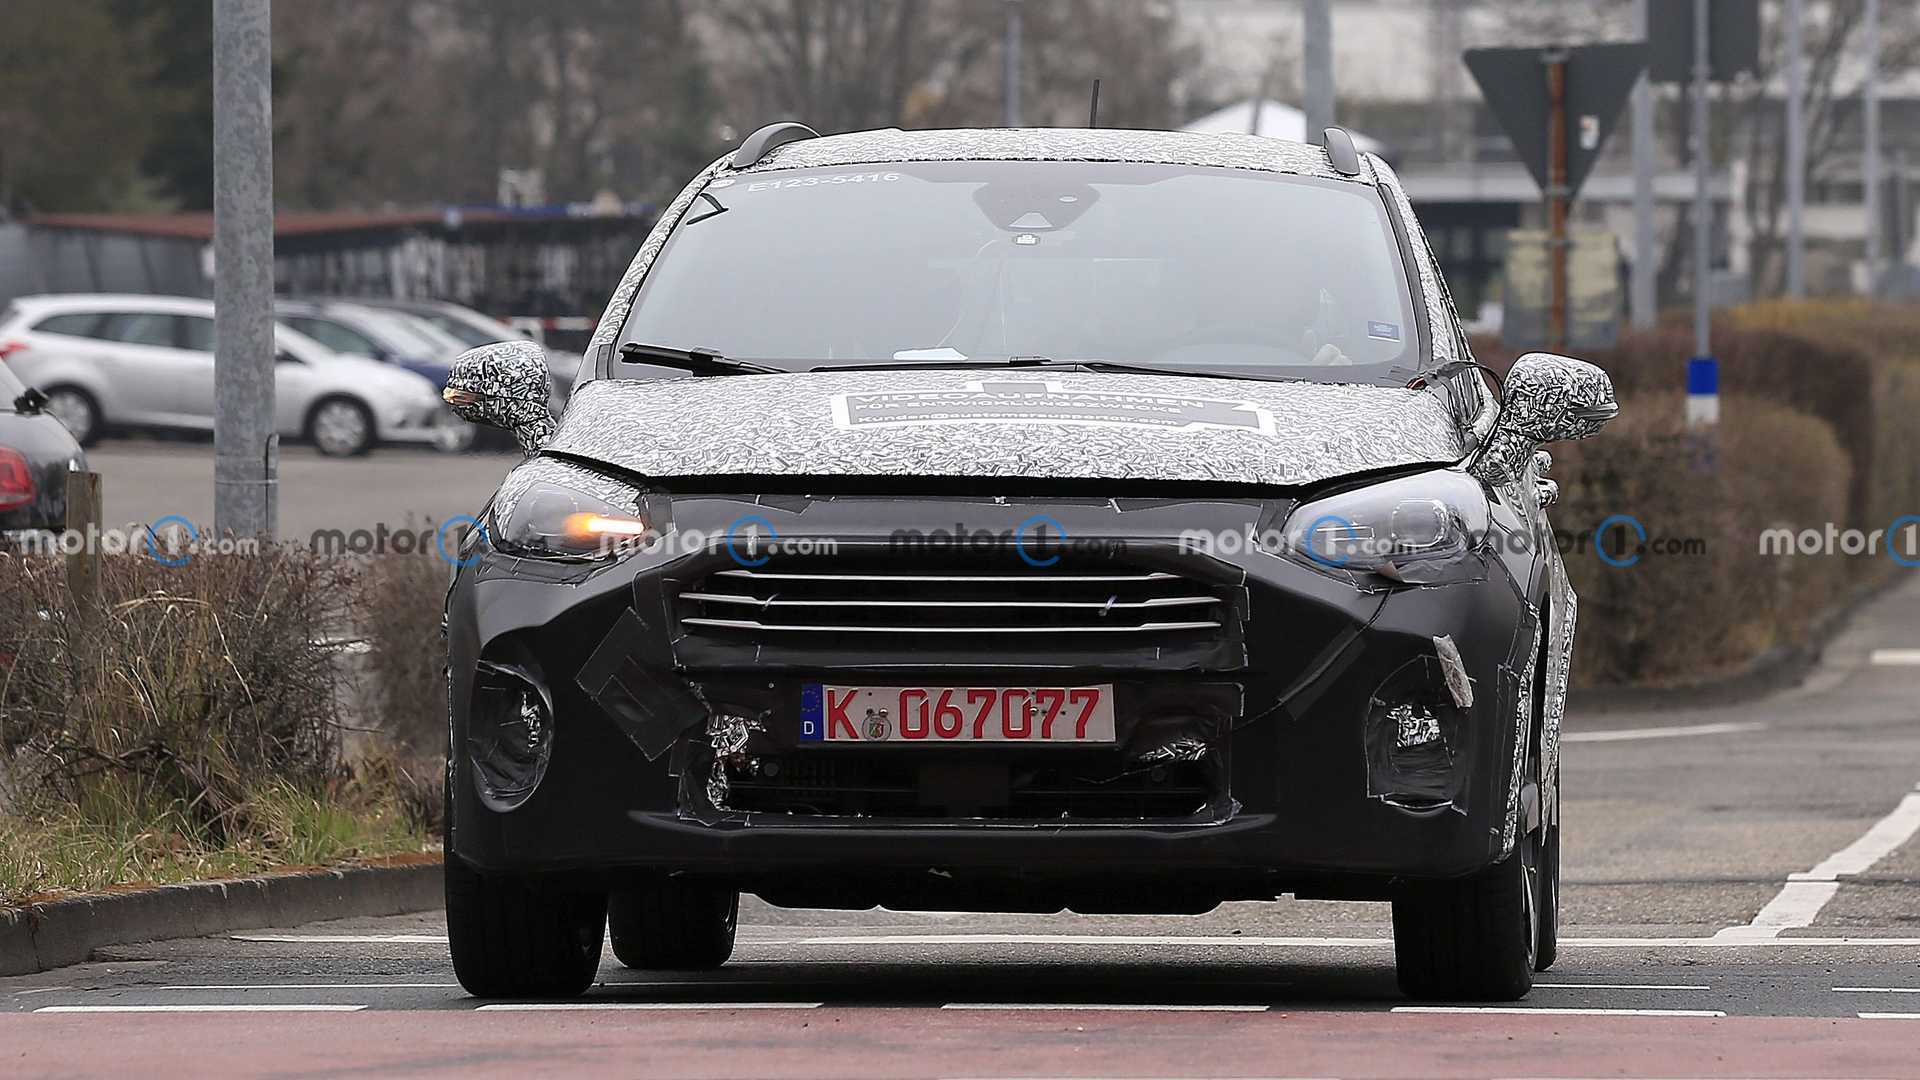 خودروی جدید Fiesta Facelift Spied شرکت فورد با استتار کامل در خیابان دیده شد